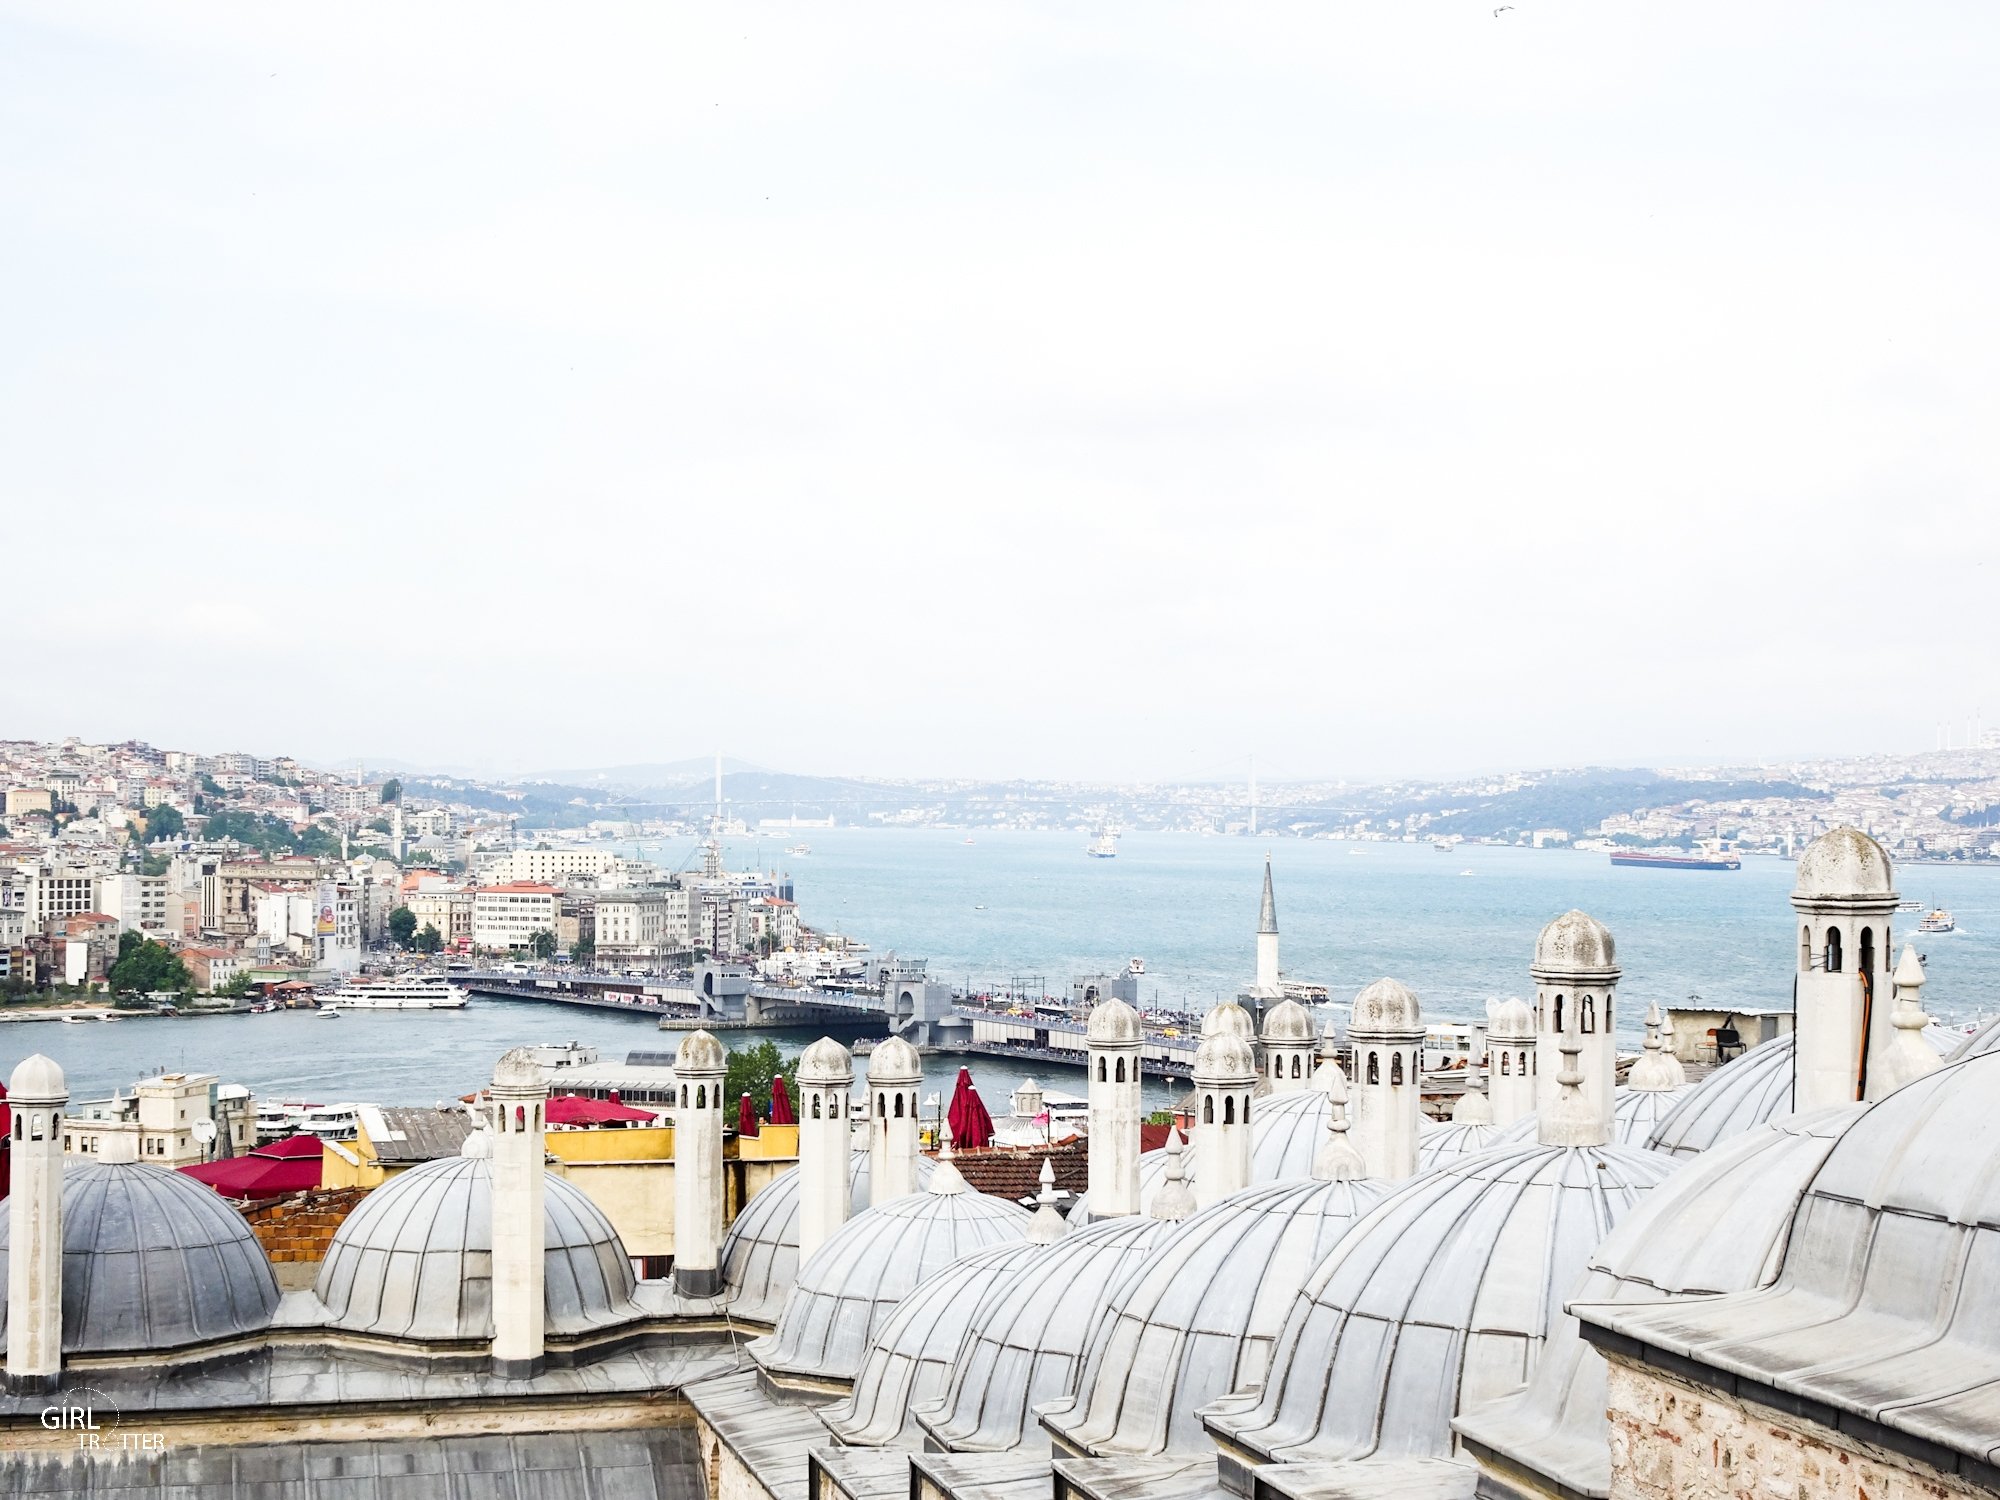 Vue de la terrasse de la mosquee de Soliman le Magnifique Istanbul